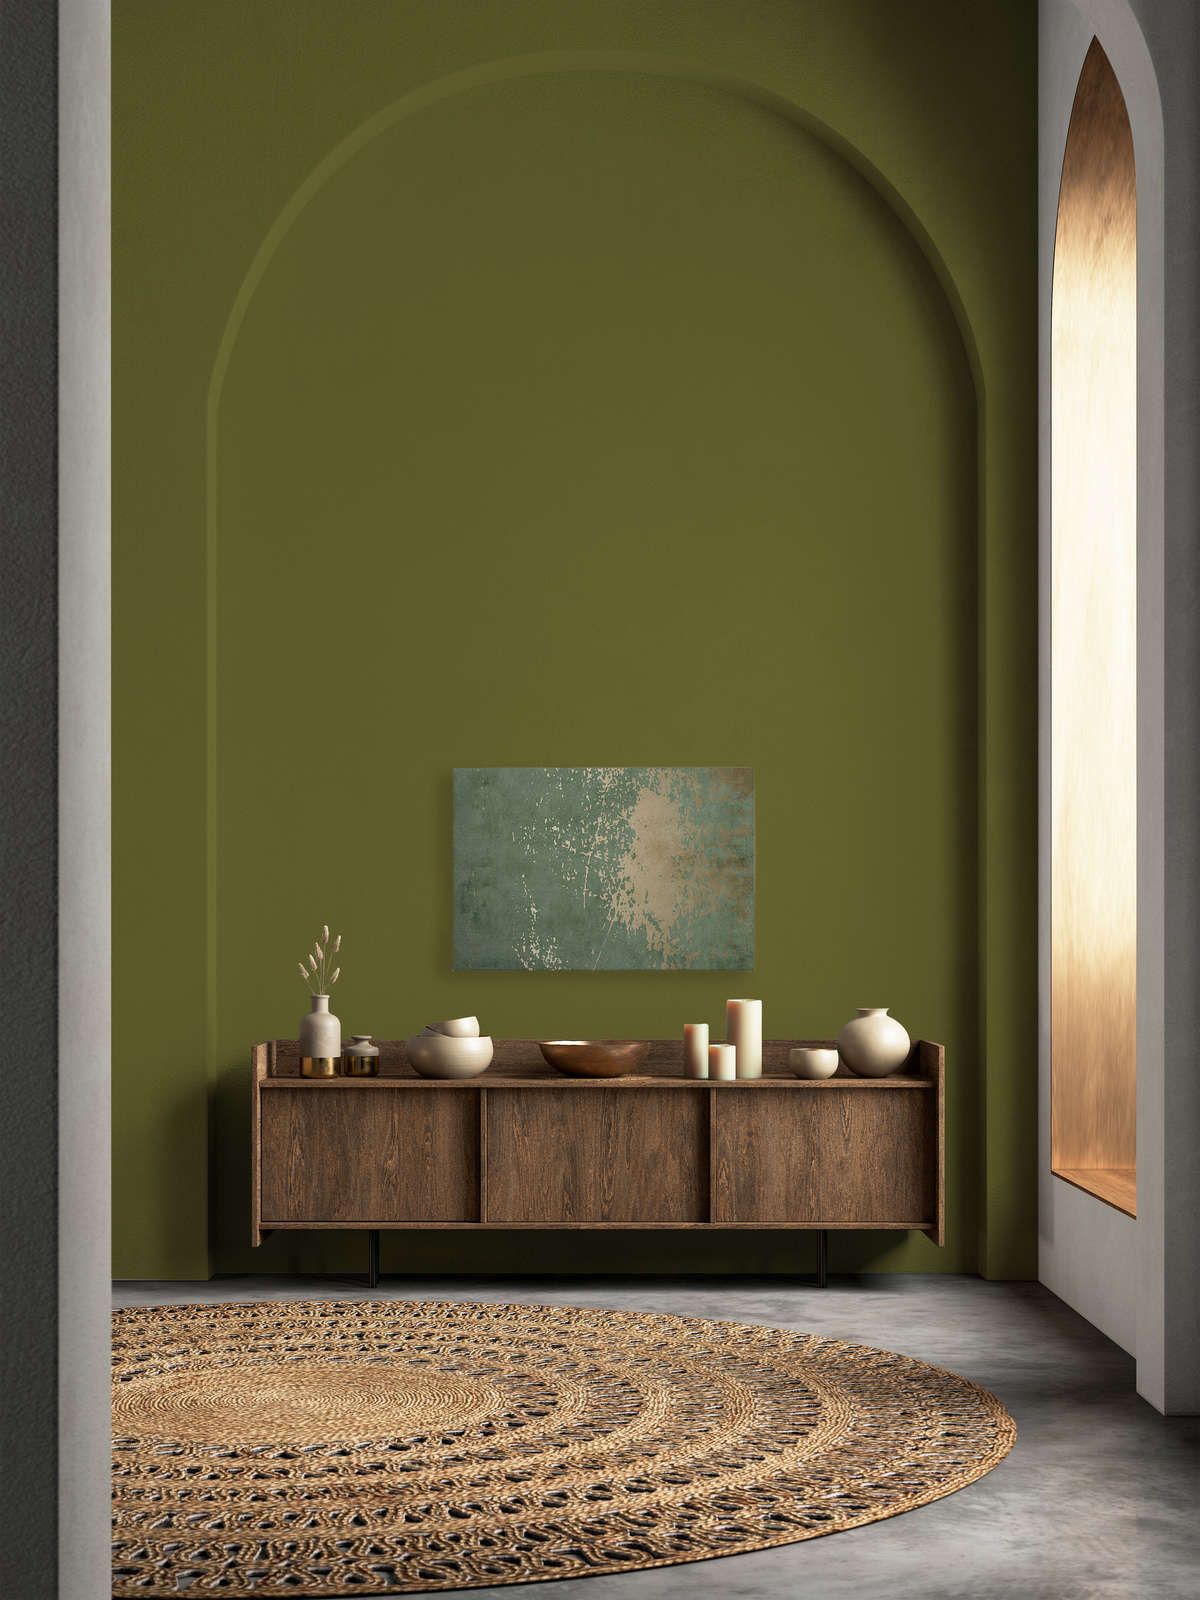             Vintage Wall 1 - Toile vert sauge & or aspect plâtre usé - 0,90 m x 0,60 m
        